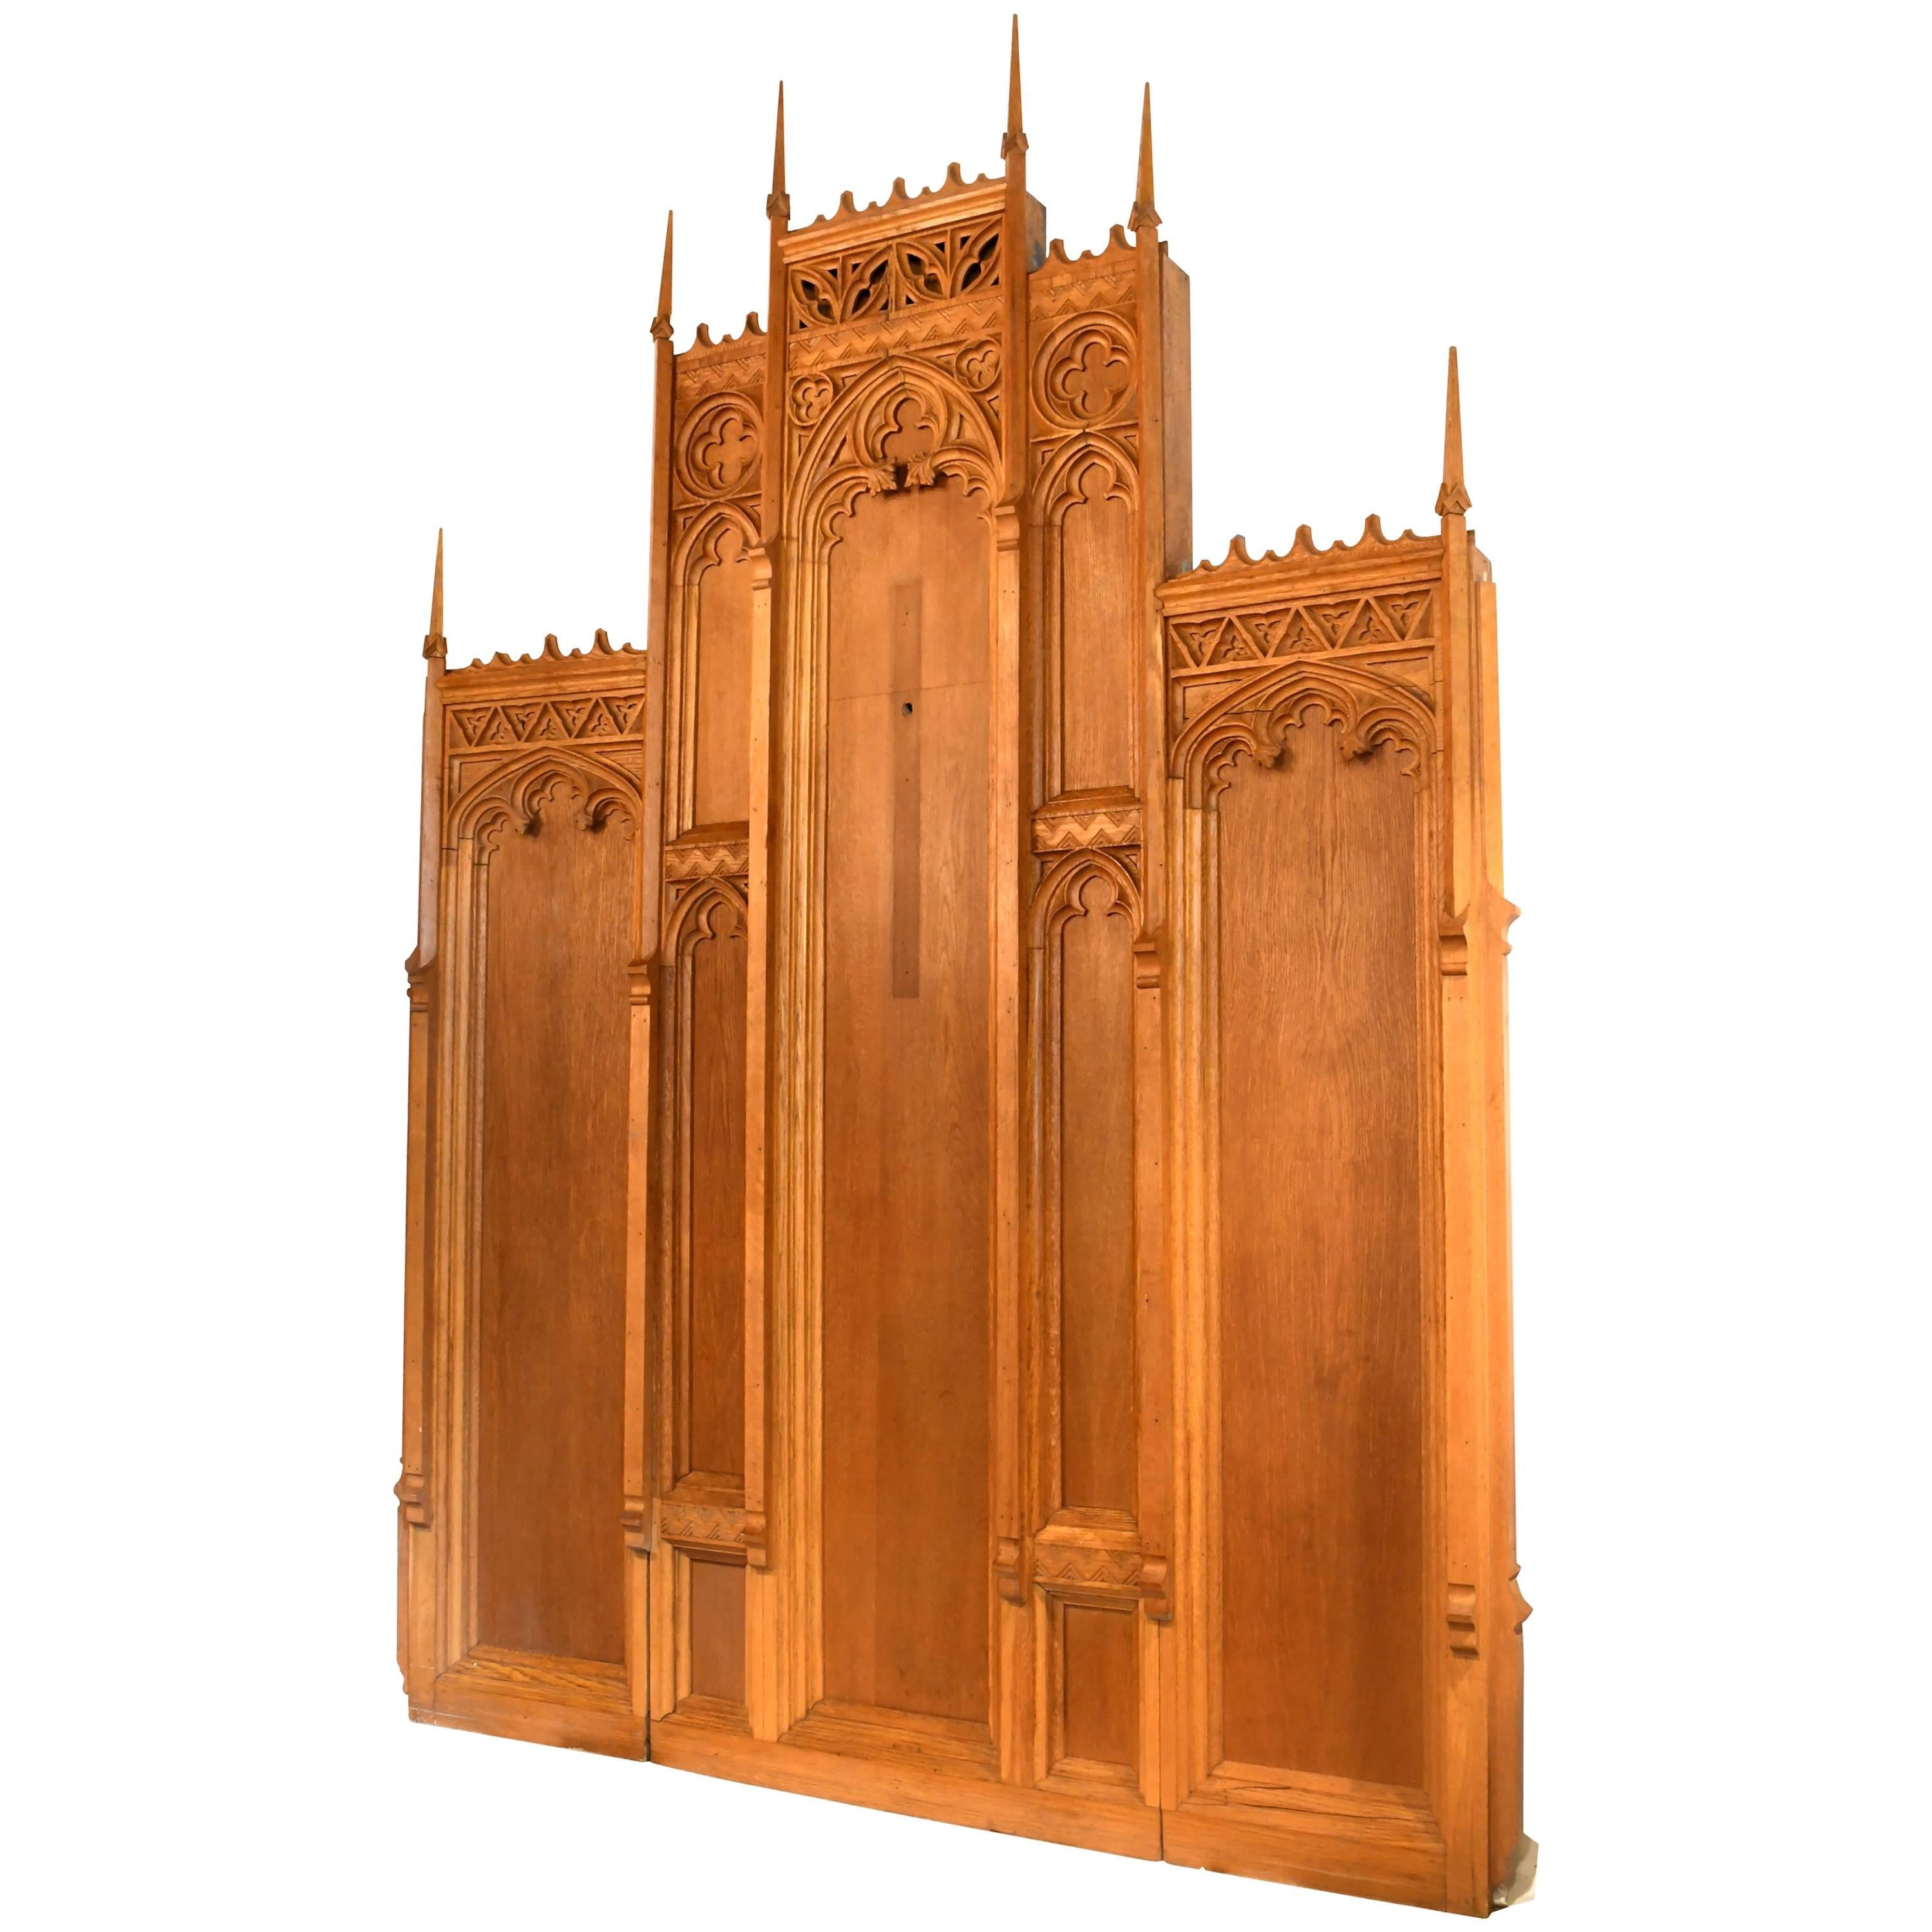 Gothic Oak Altarpiece with Deco Details